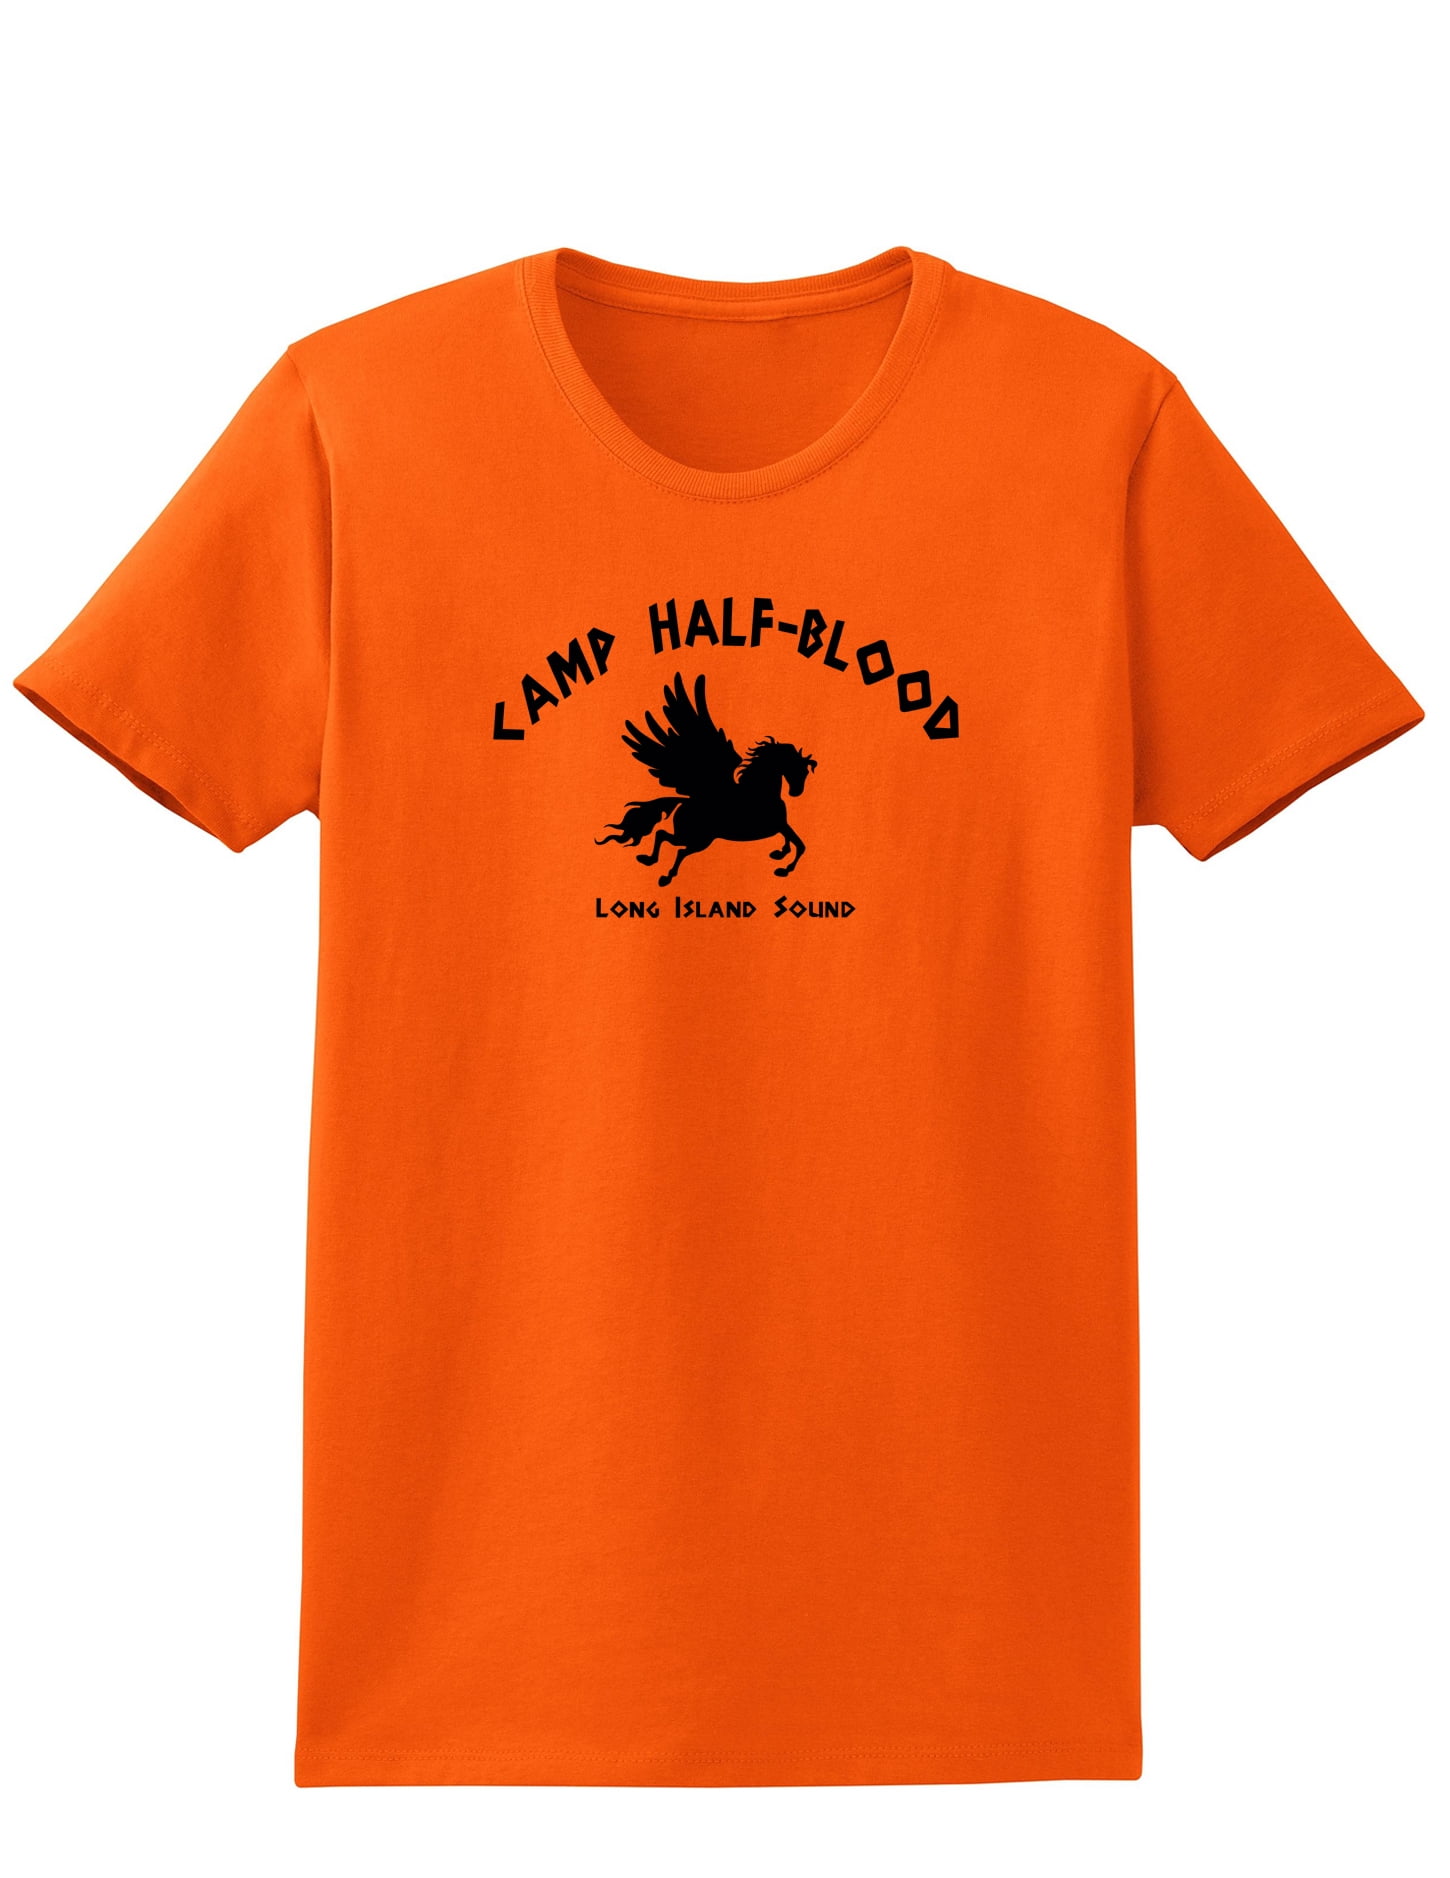 camp half blood' Women's T-Shirt